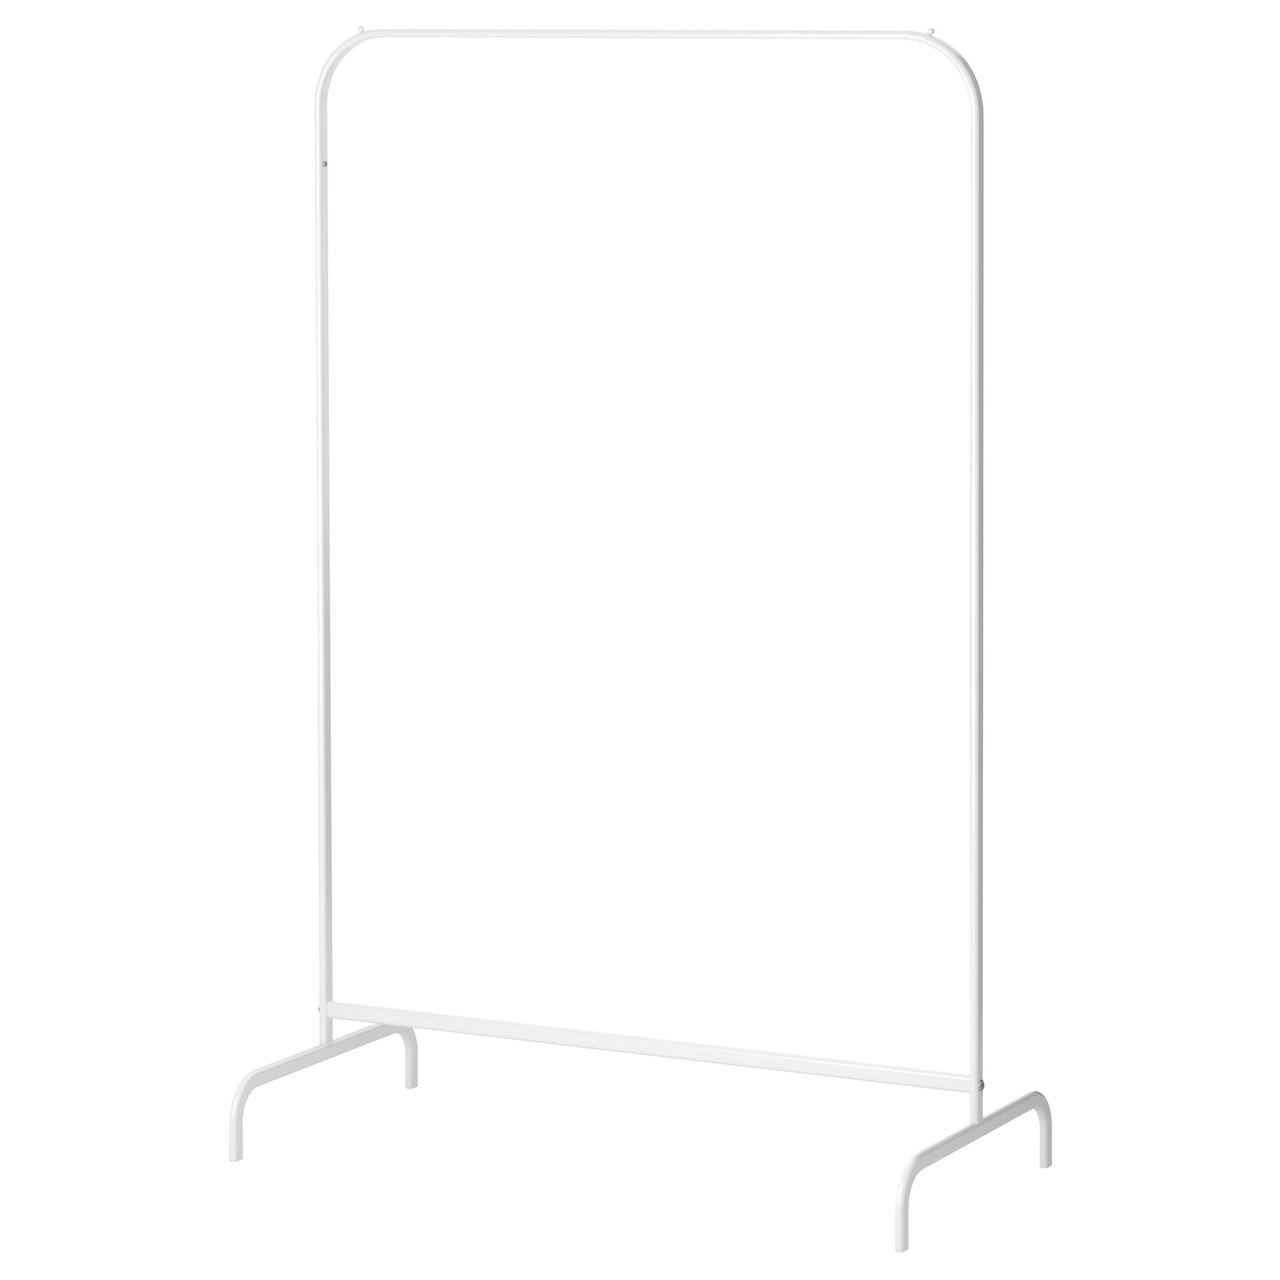 

Вешалка для одежды IKEA (ИКЕА) MULIG белая (601.794.34)